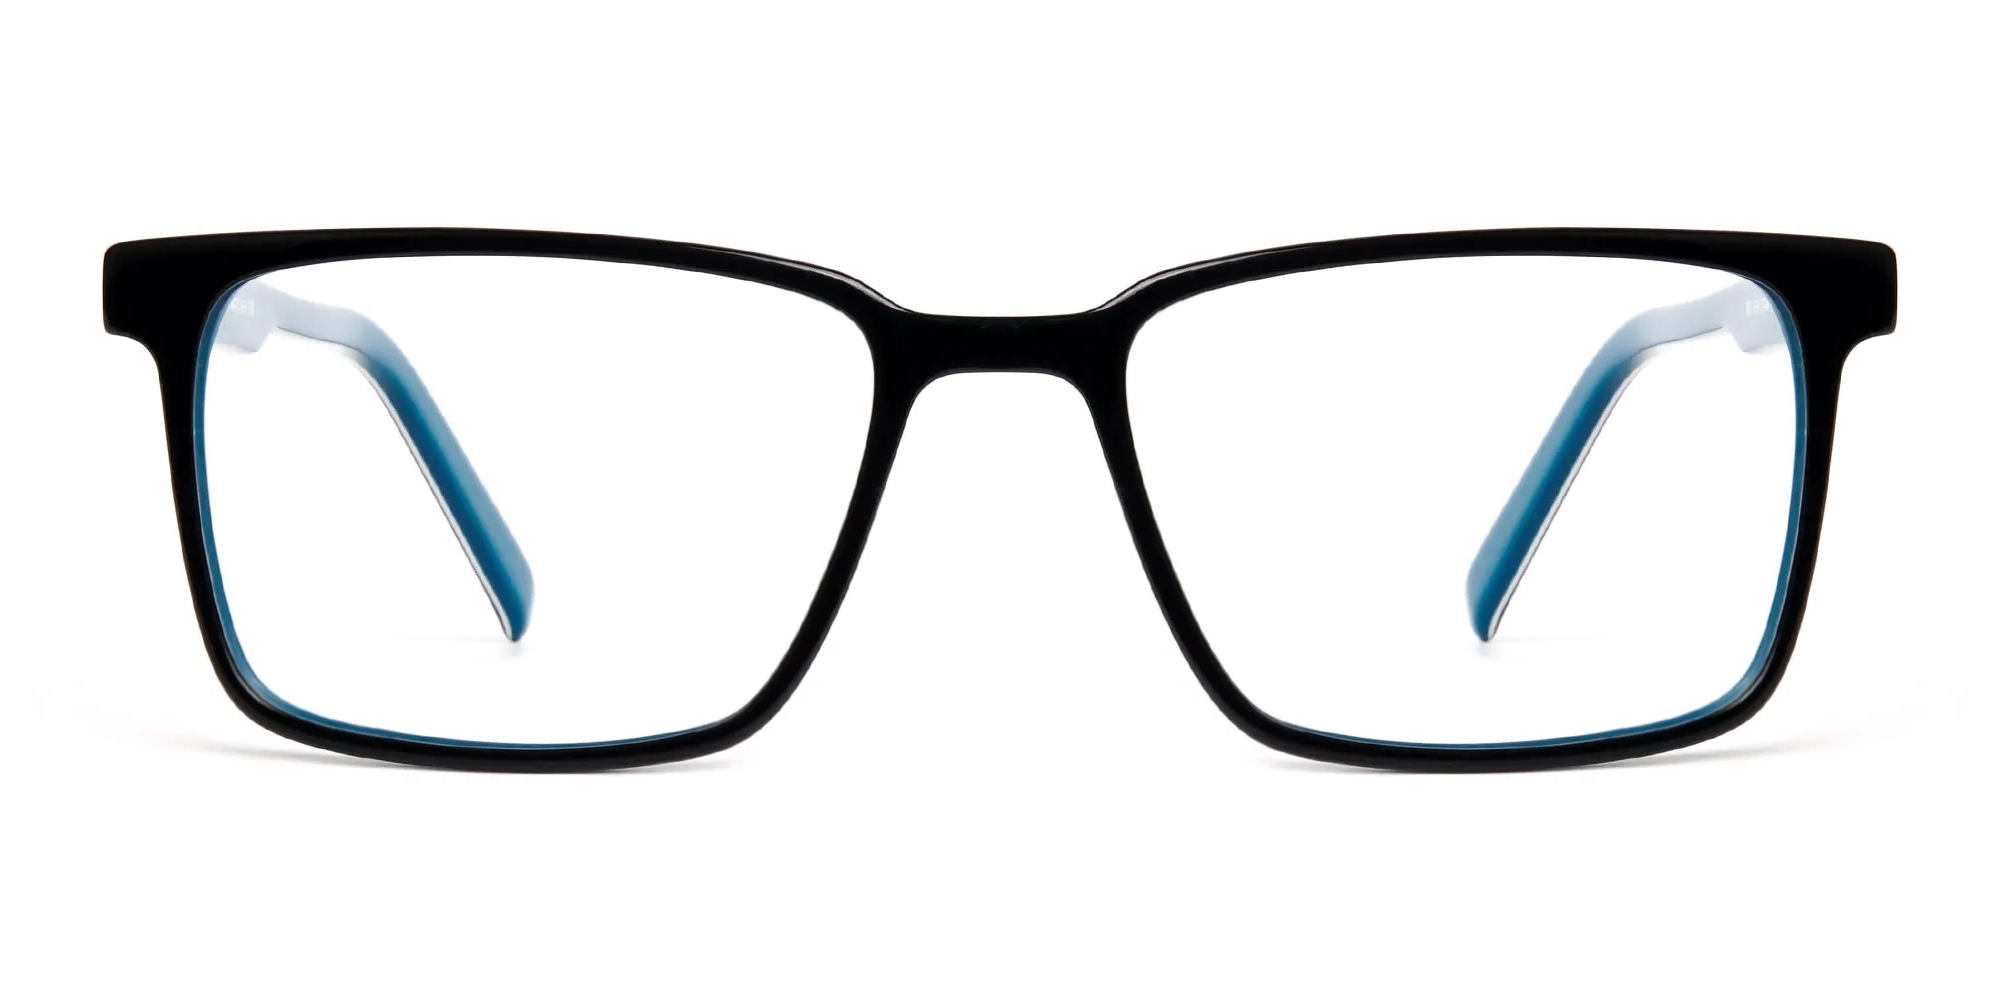 Black and Teal Designer Rectangular Glasses frames-2